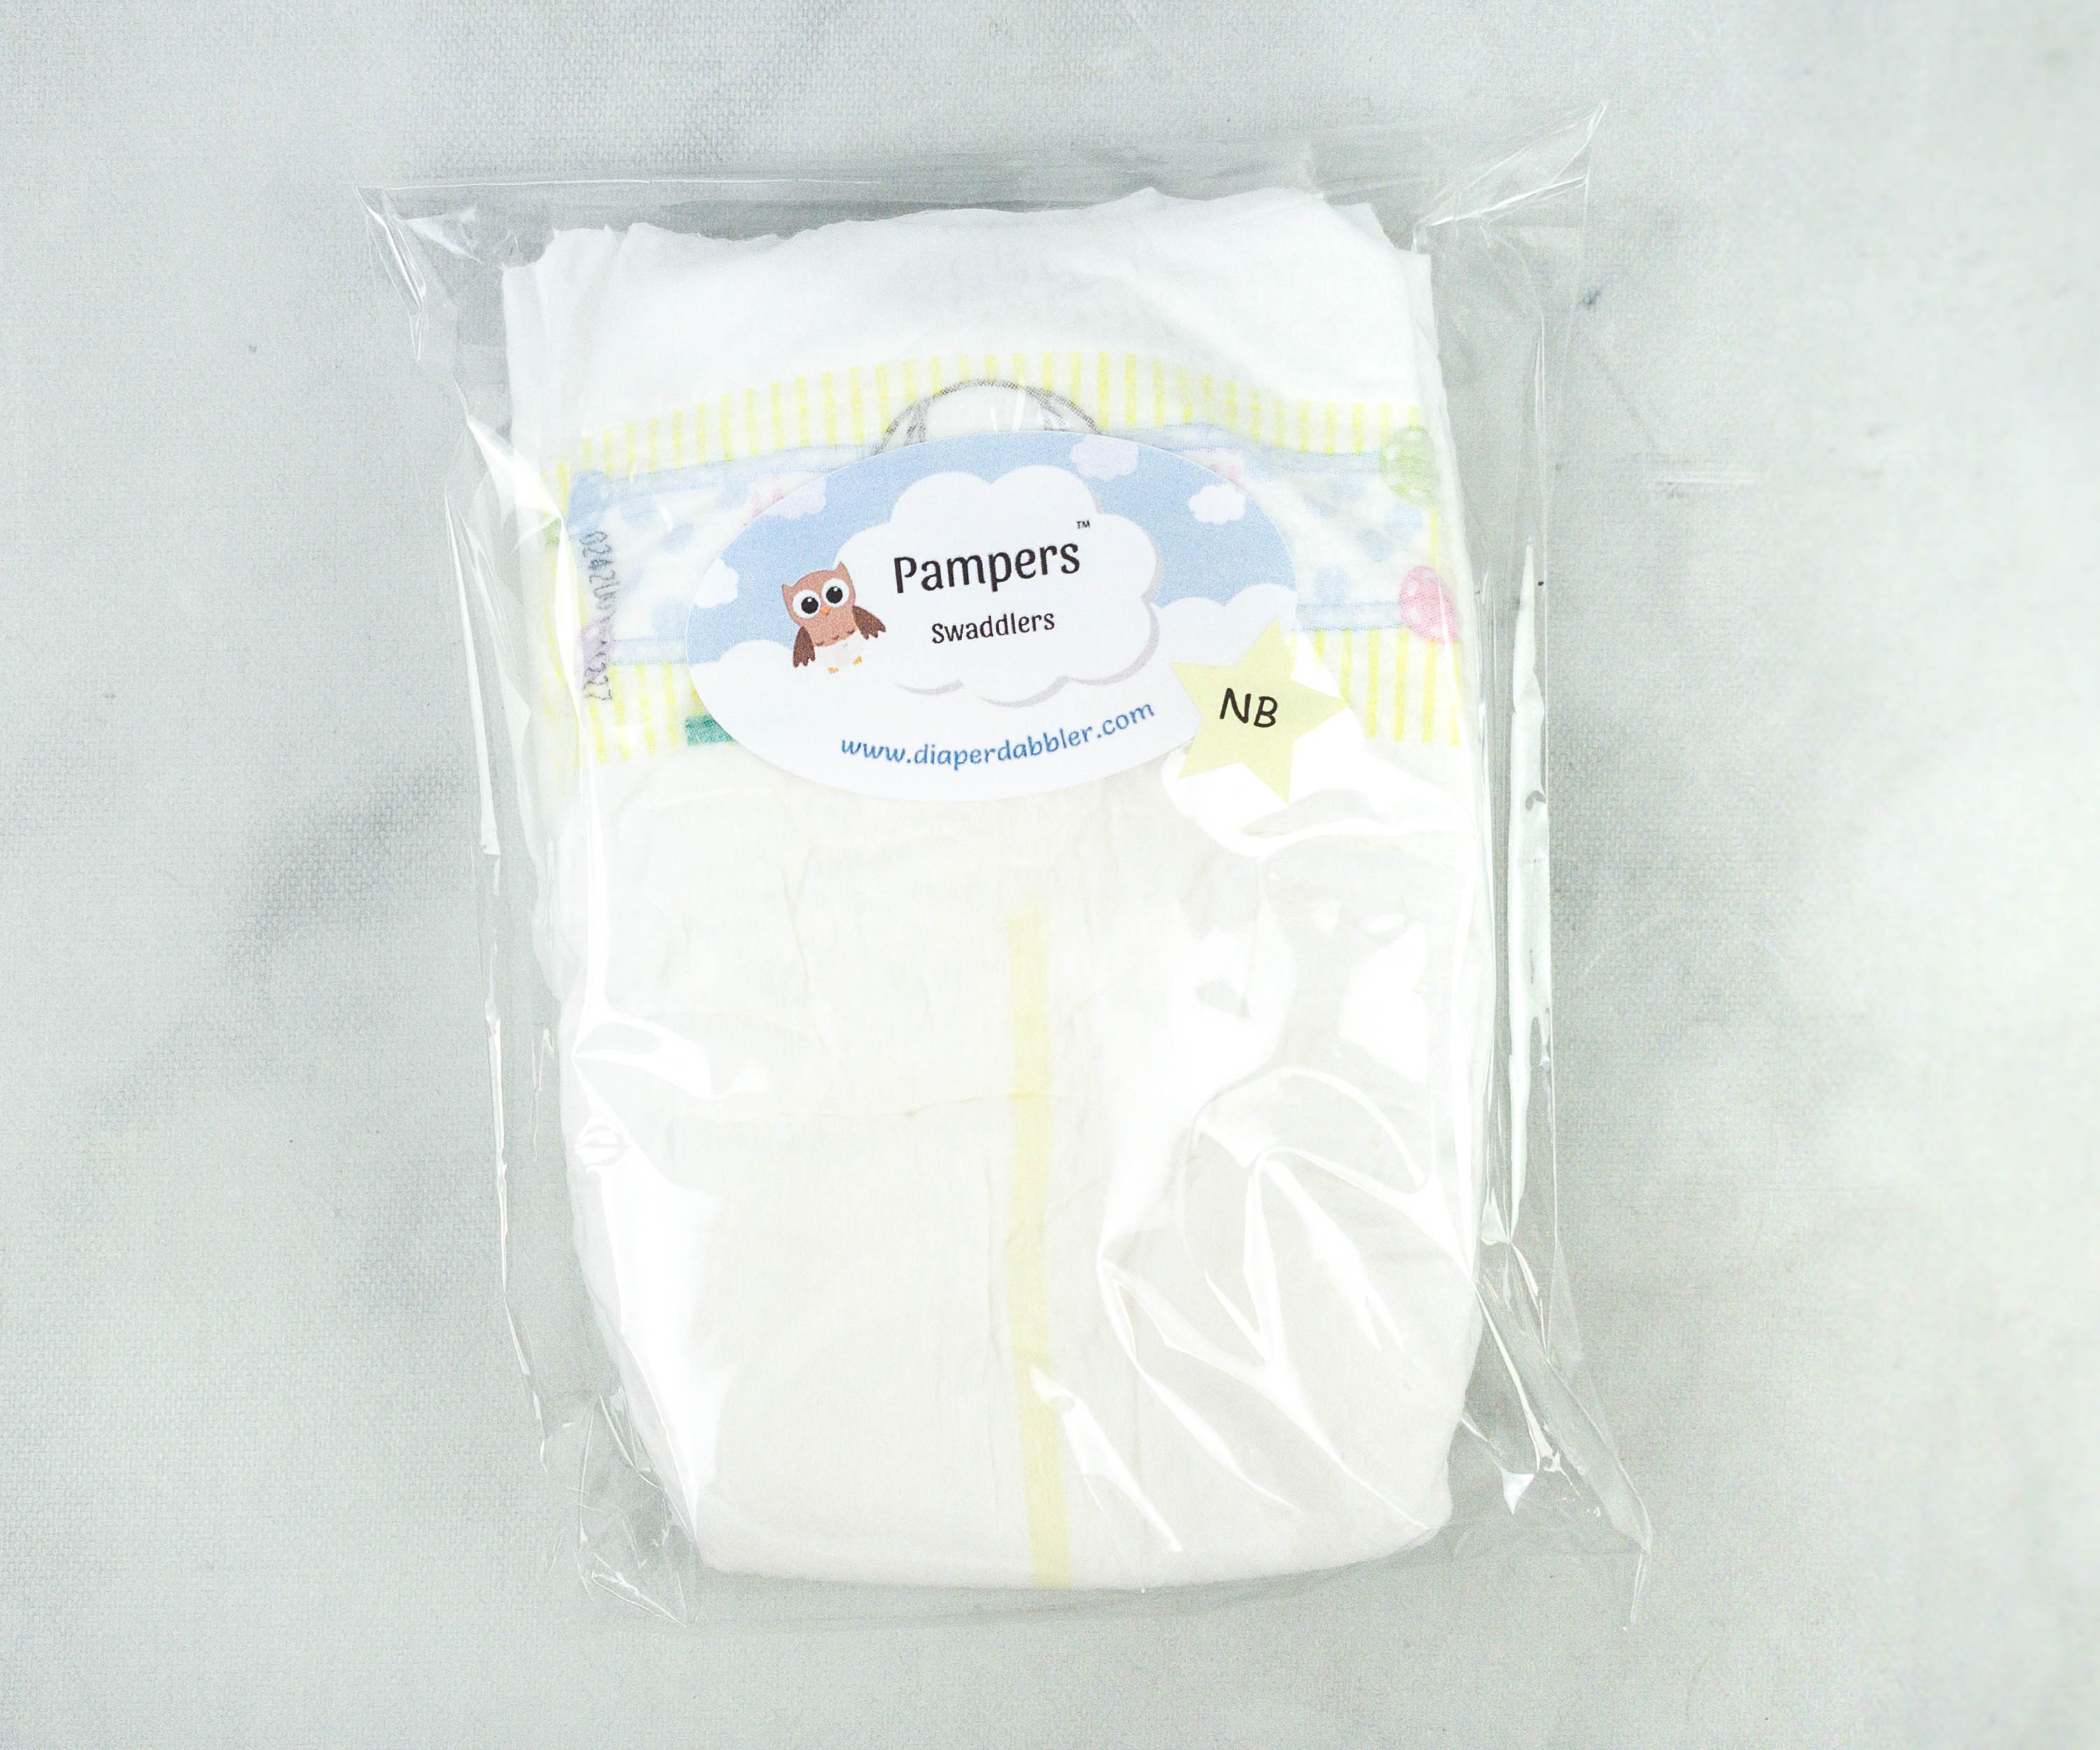 Diaper Brand Spotlight Series: Pampers - Diaper Dabbler